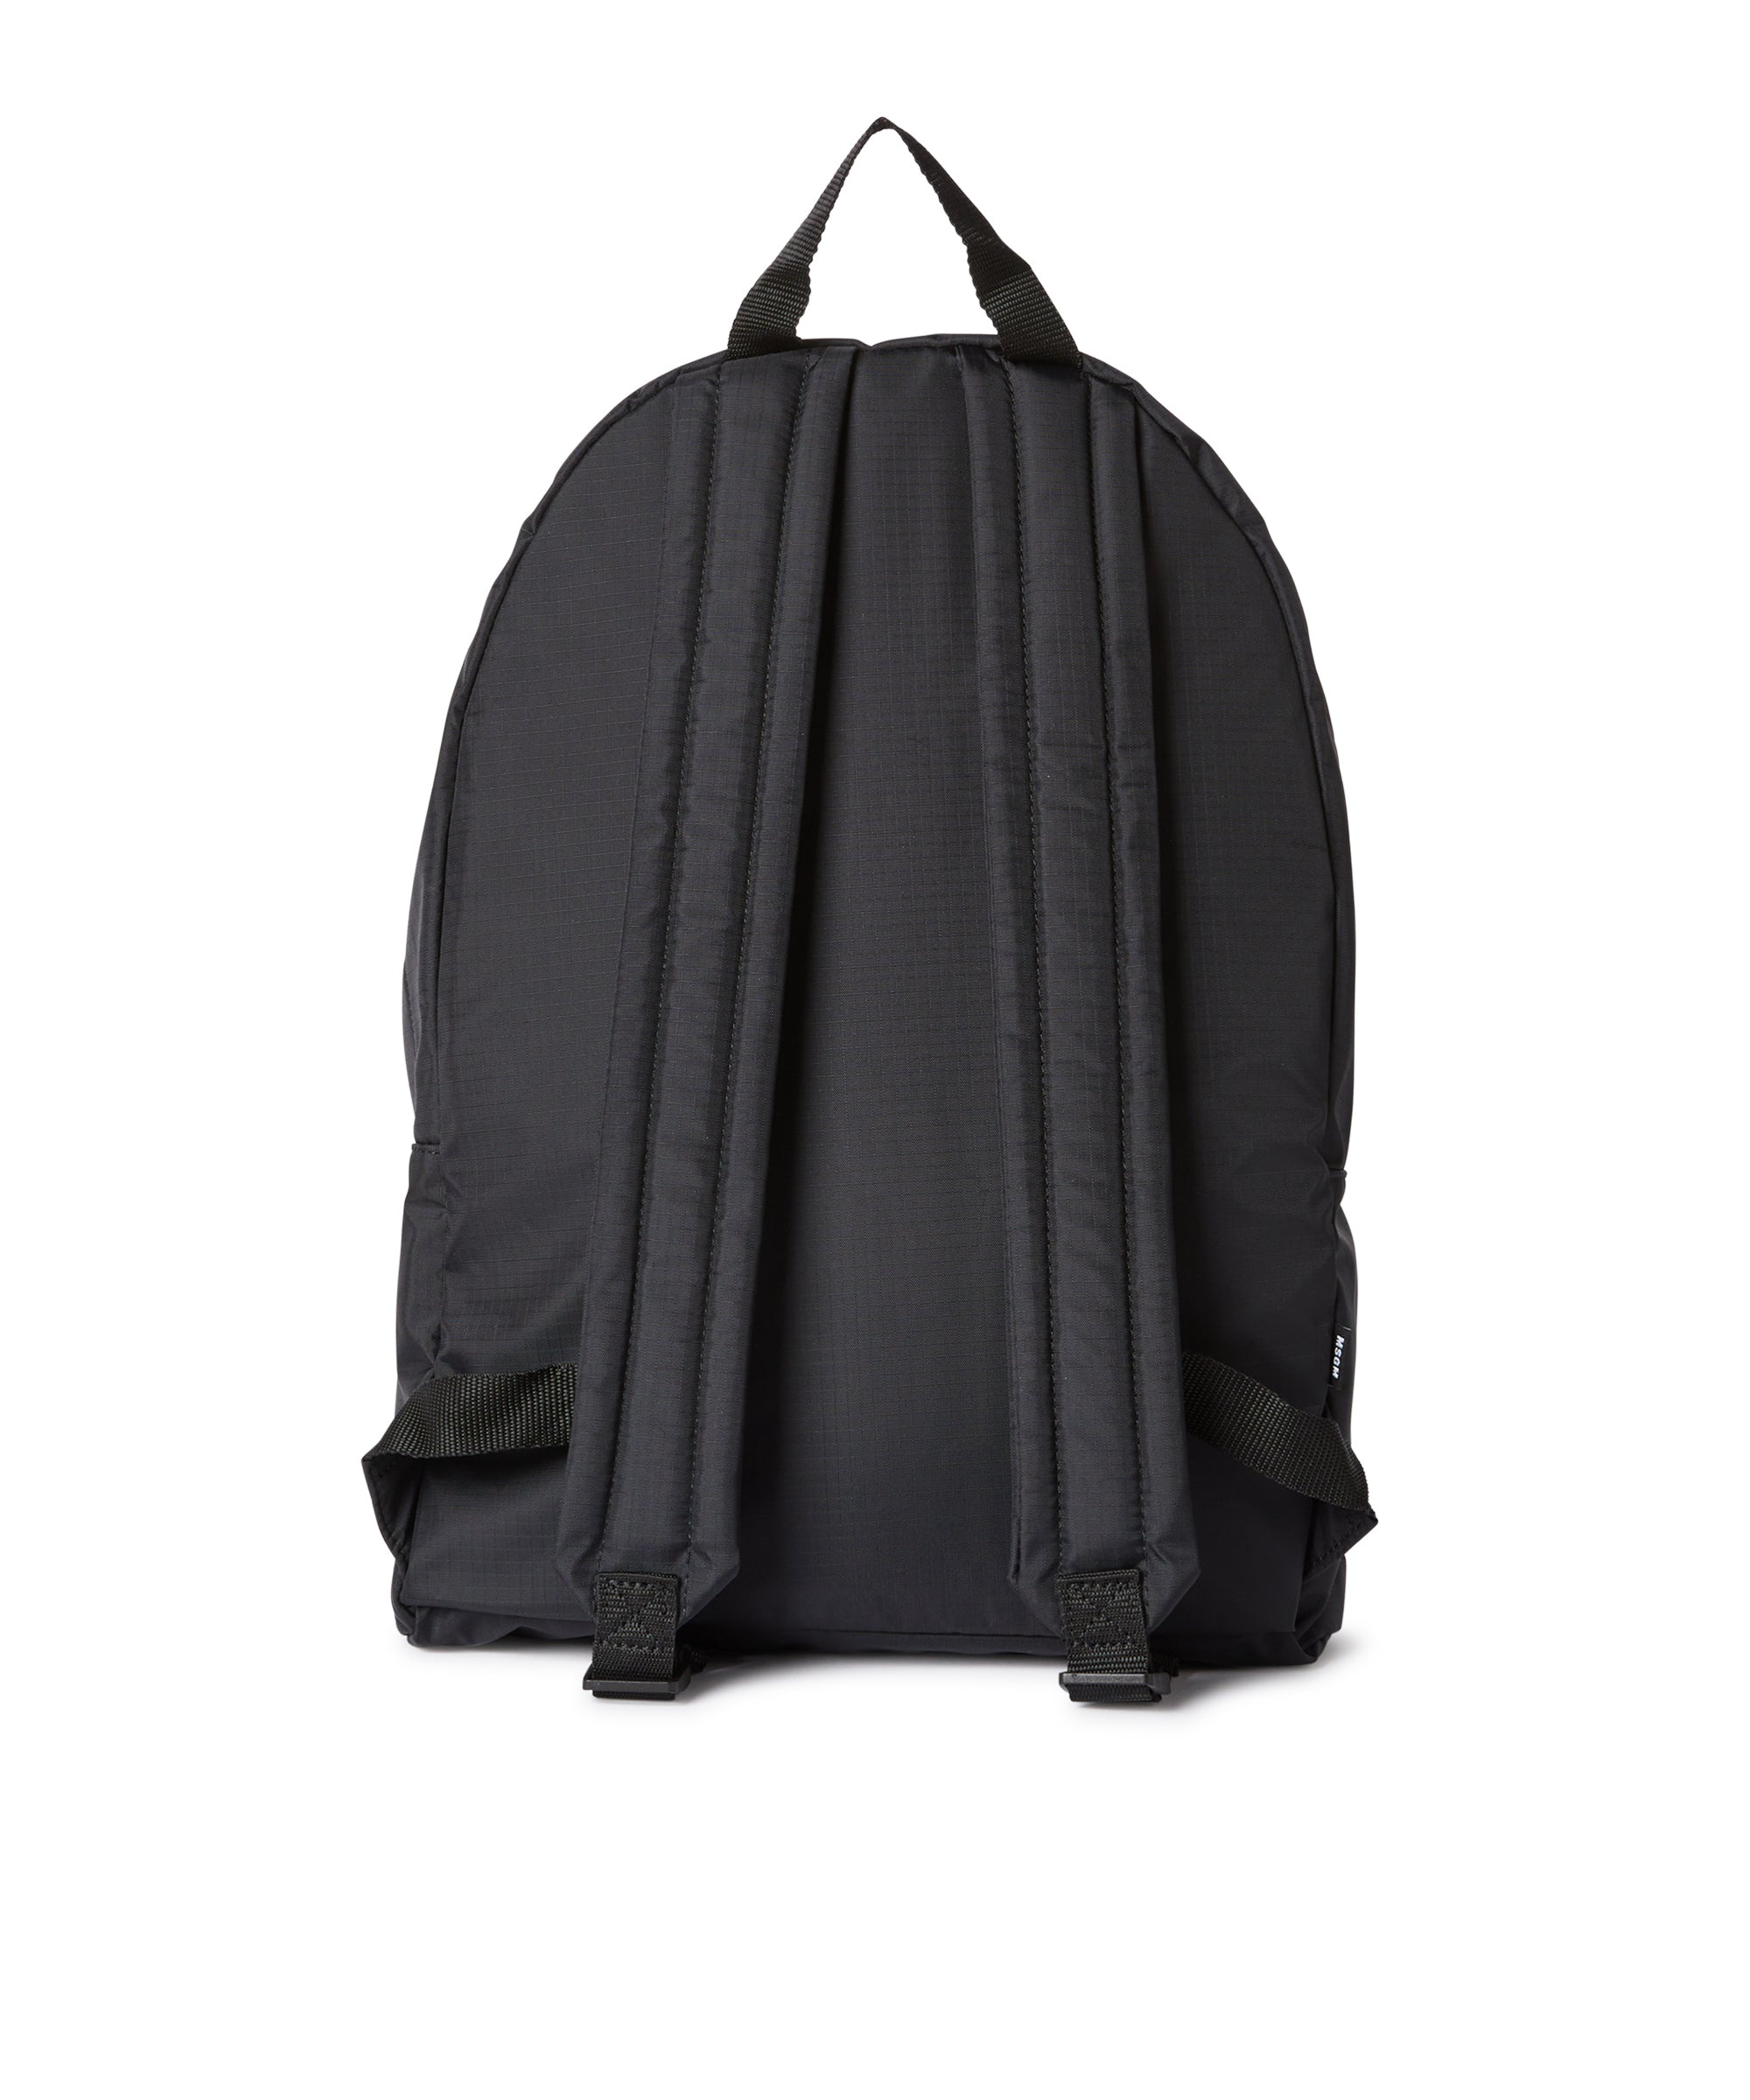 "Signature Iconic Nylon" backpack - 2